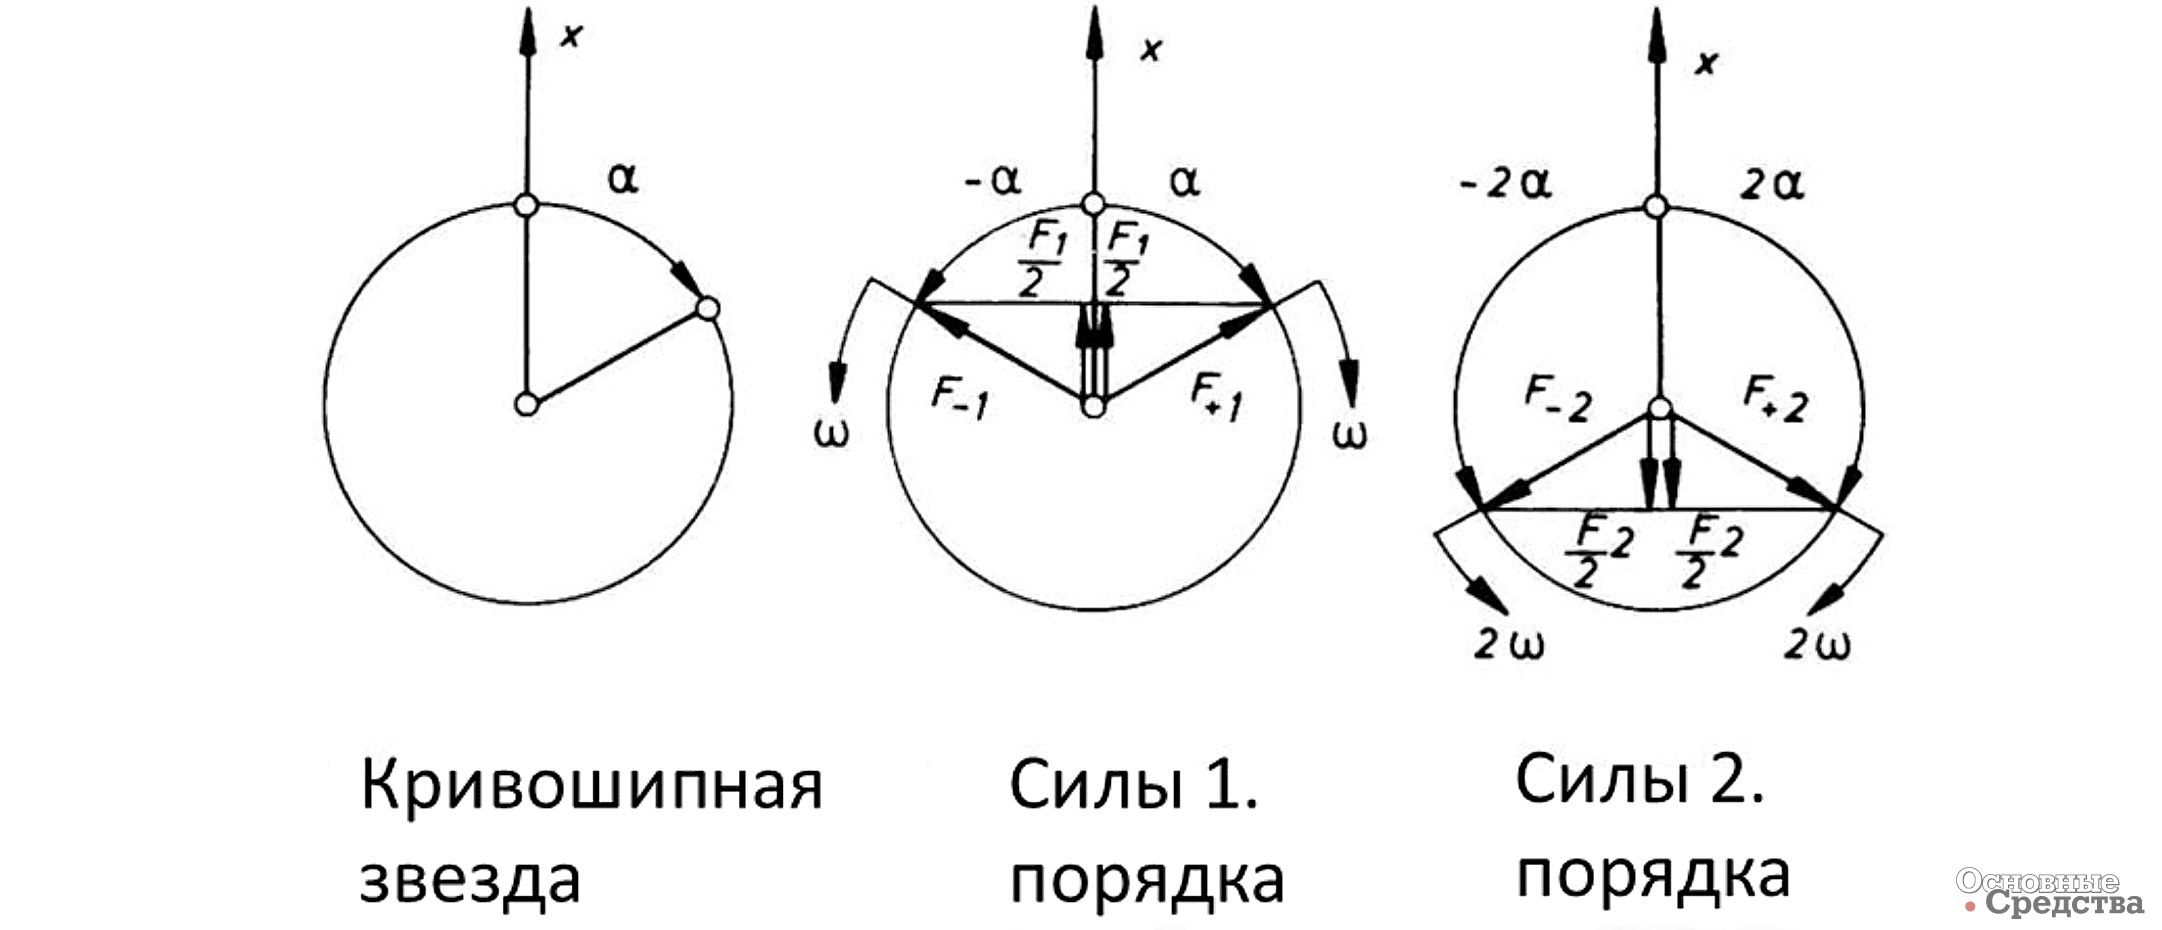 Рис. 2. Моменты и силы инерции: а) Принятая система координат и силы инерции; б) Моменты от сил инерции 1-го порядка; в) Моменты от сил инерции 2-го порядка